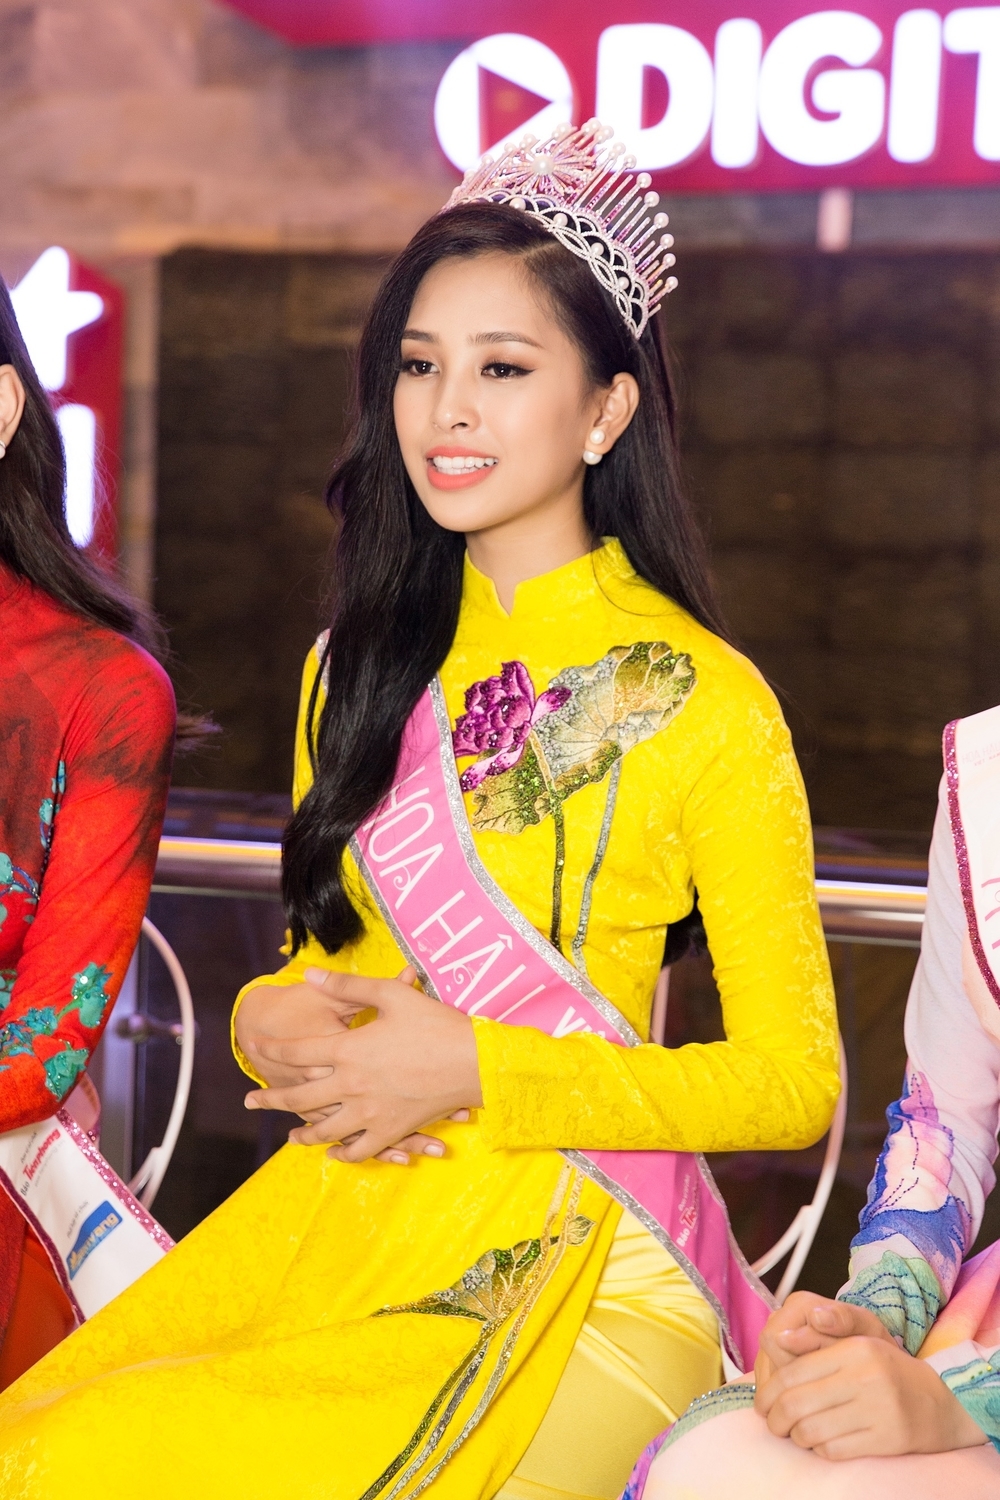 
Hoa hậu Trần Tiểu Vy quả không hổ danh với ngôi vị và vương miện mà mình được trao khi xuất hiện trong buổi phỏng vấn gần nhất, mỹ nhân nhỏ tuổi này đã lan tỏa sức hút mạnh mẽ với nahn sắc được tô điểm layout phù hợp, ngọt ngào.